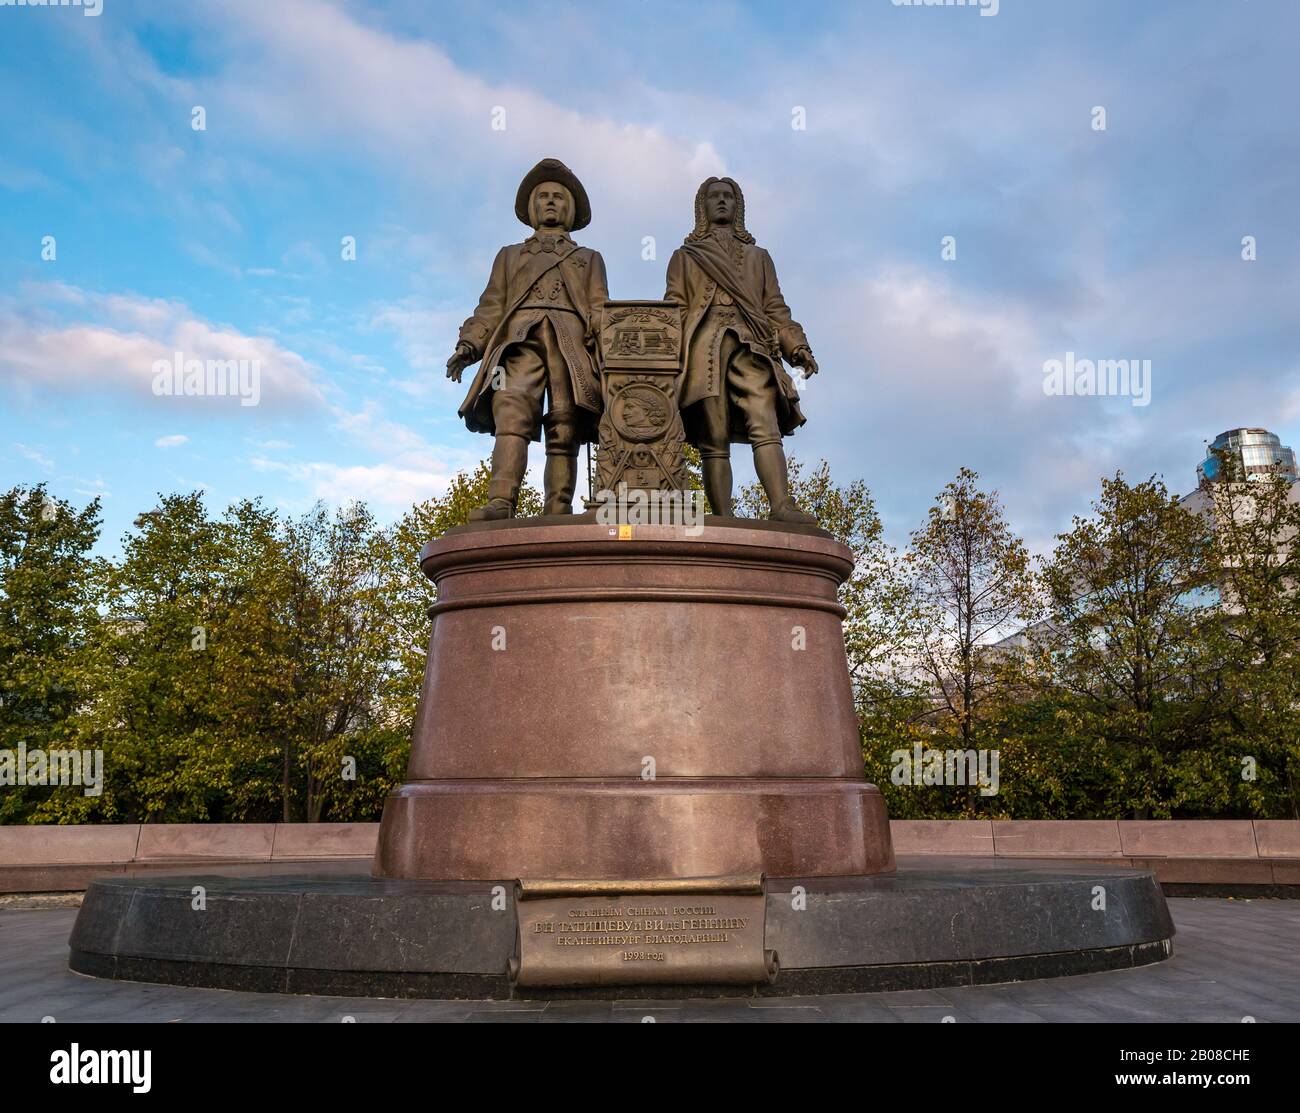 Scultura commemorativa in bronzo per i fondatori della città, Vasily Tatishchev & Vilim Gennin, Ekaterinburg, Siberia, Russia Foto Stock